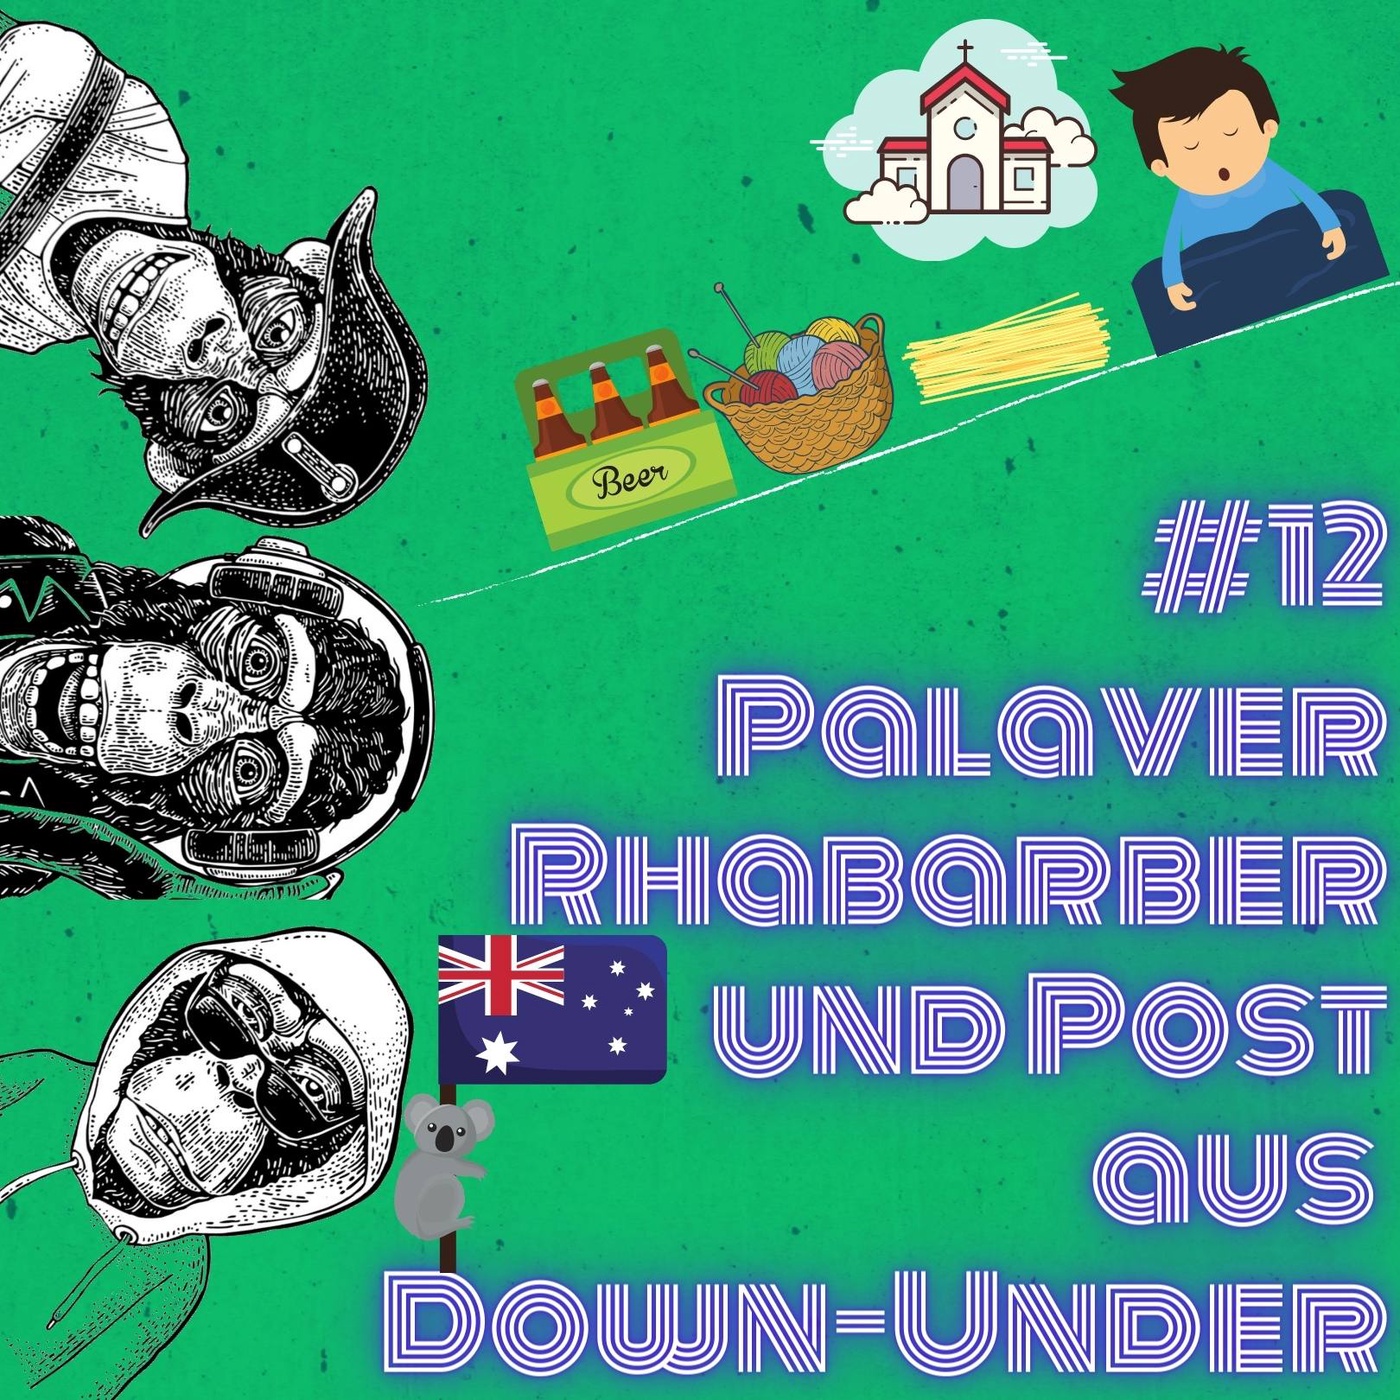 #12 Palaver Rhabarber und Post aus Down-Under